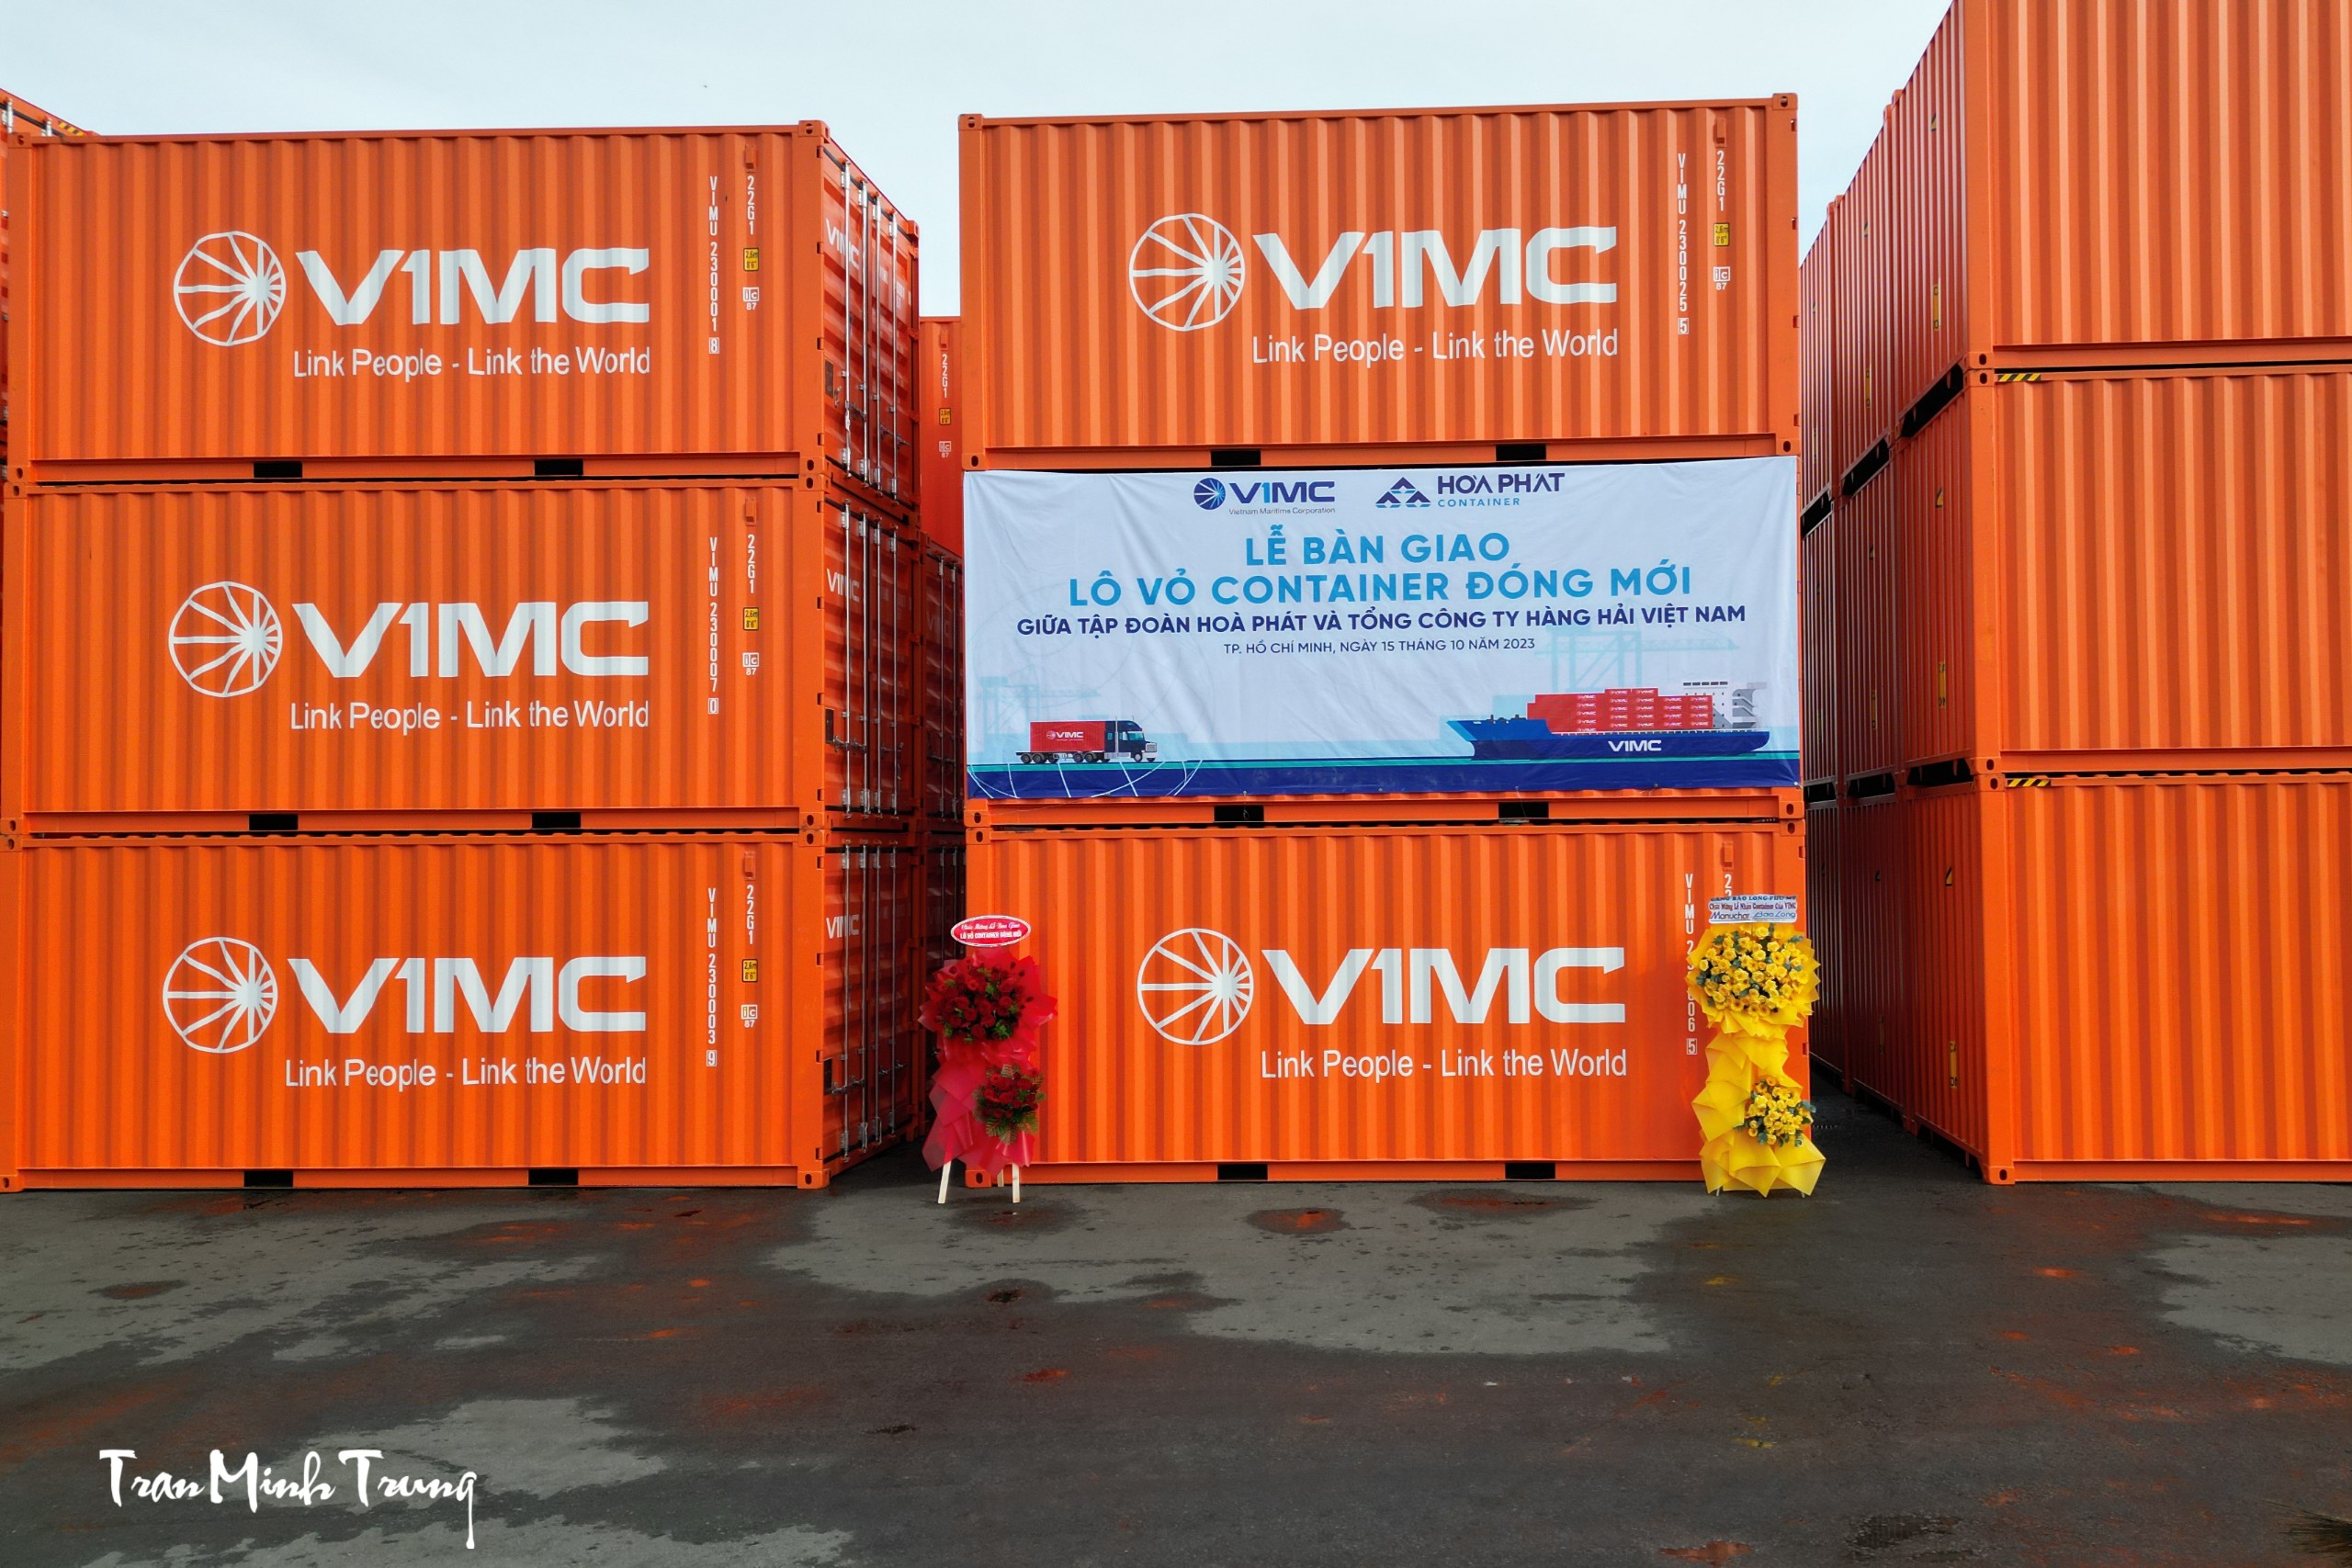 Bàn giao lô vỏ Container đóng mới giữa Tập đoàn Hoà Phát và Tổng công ty Hàng hải Việt Nam